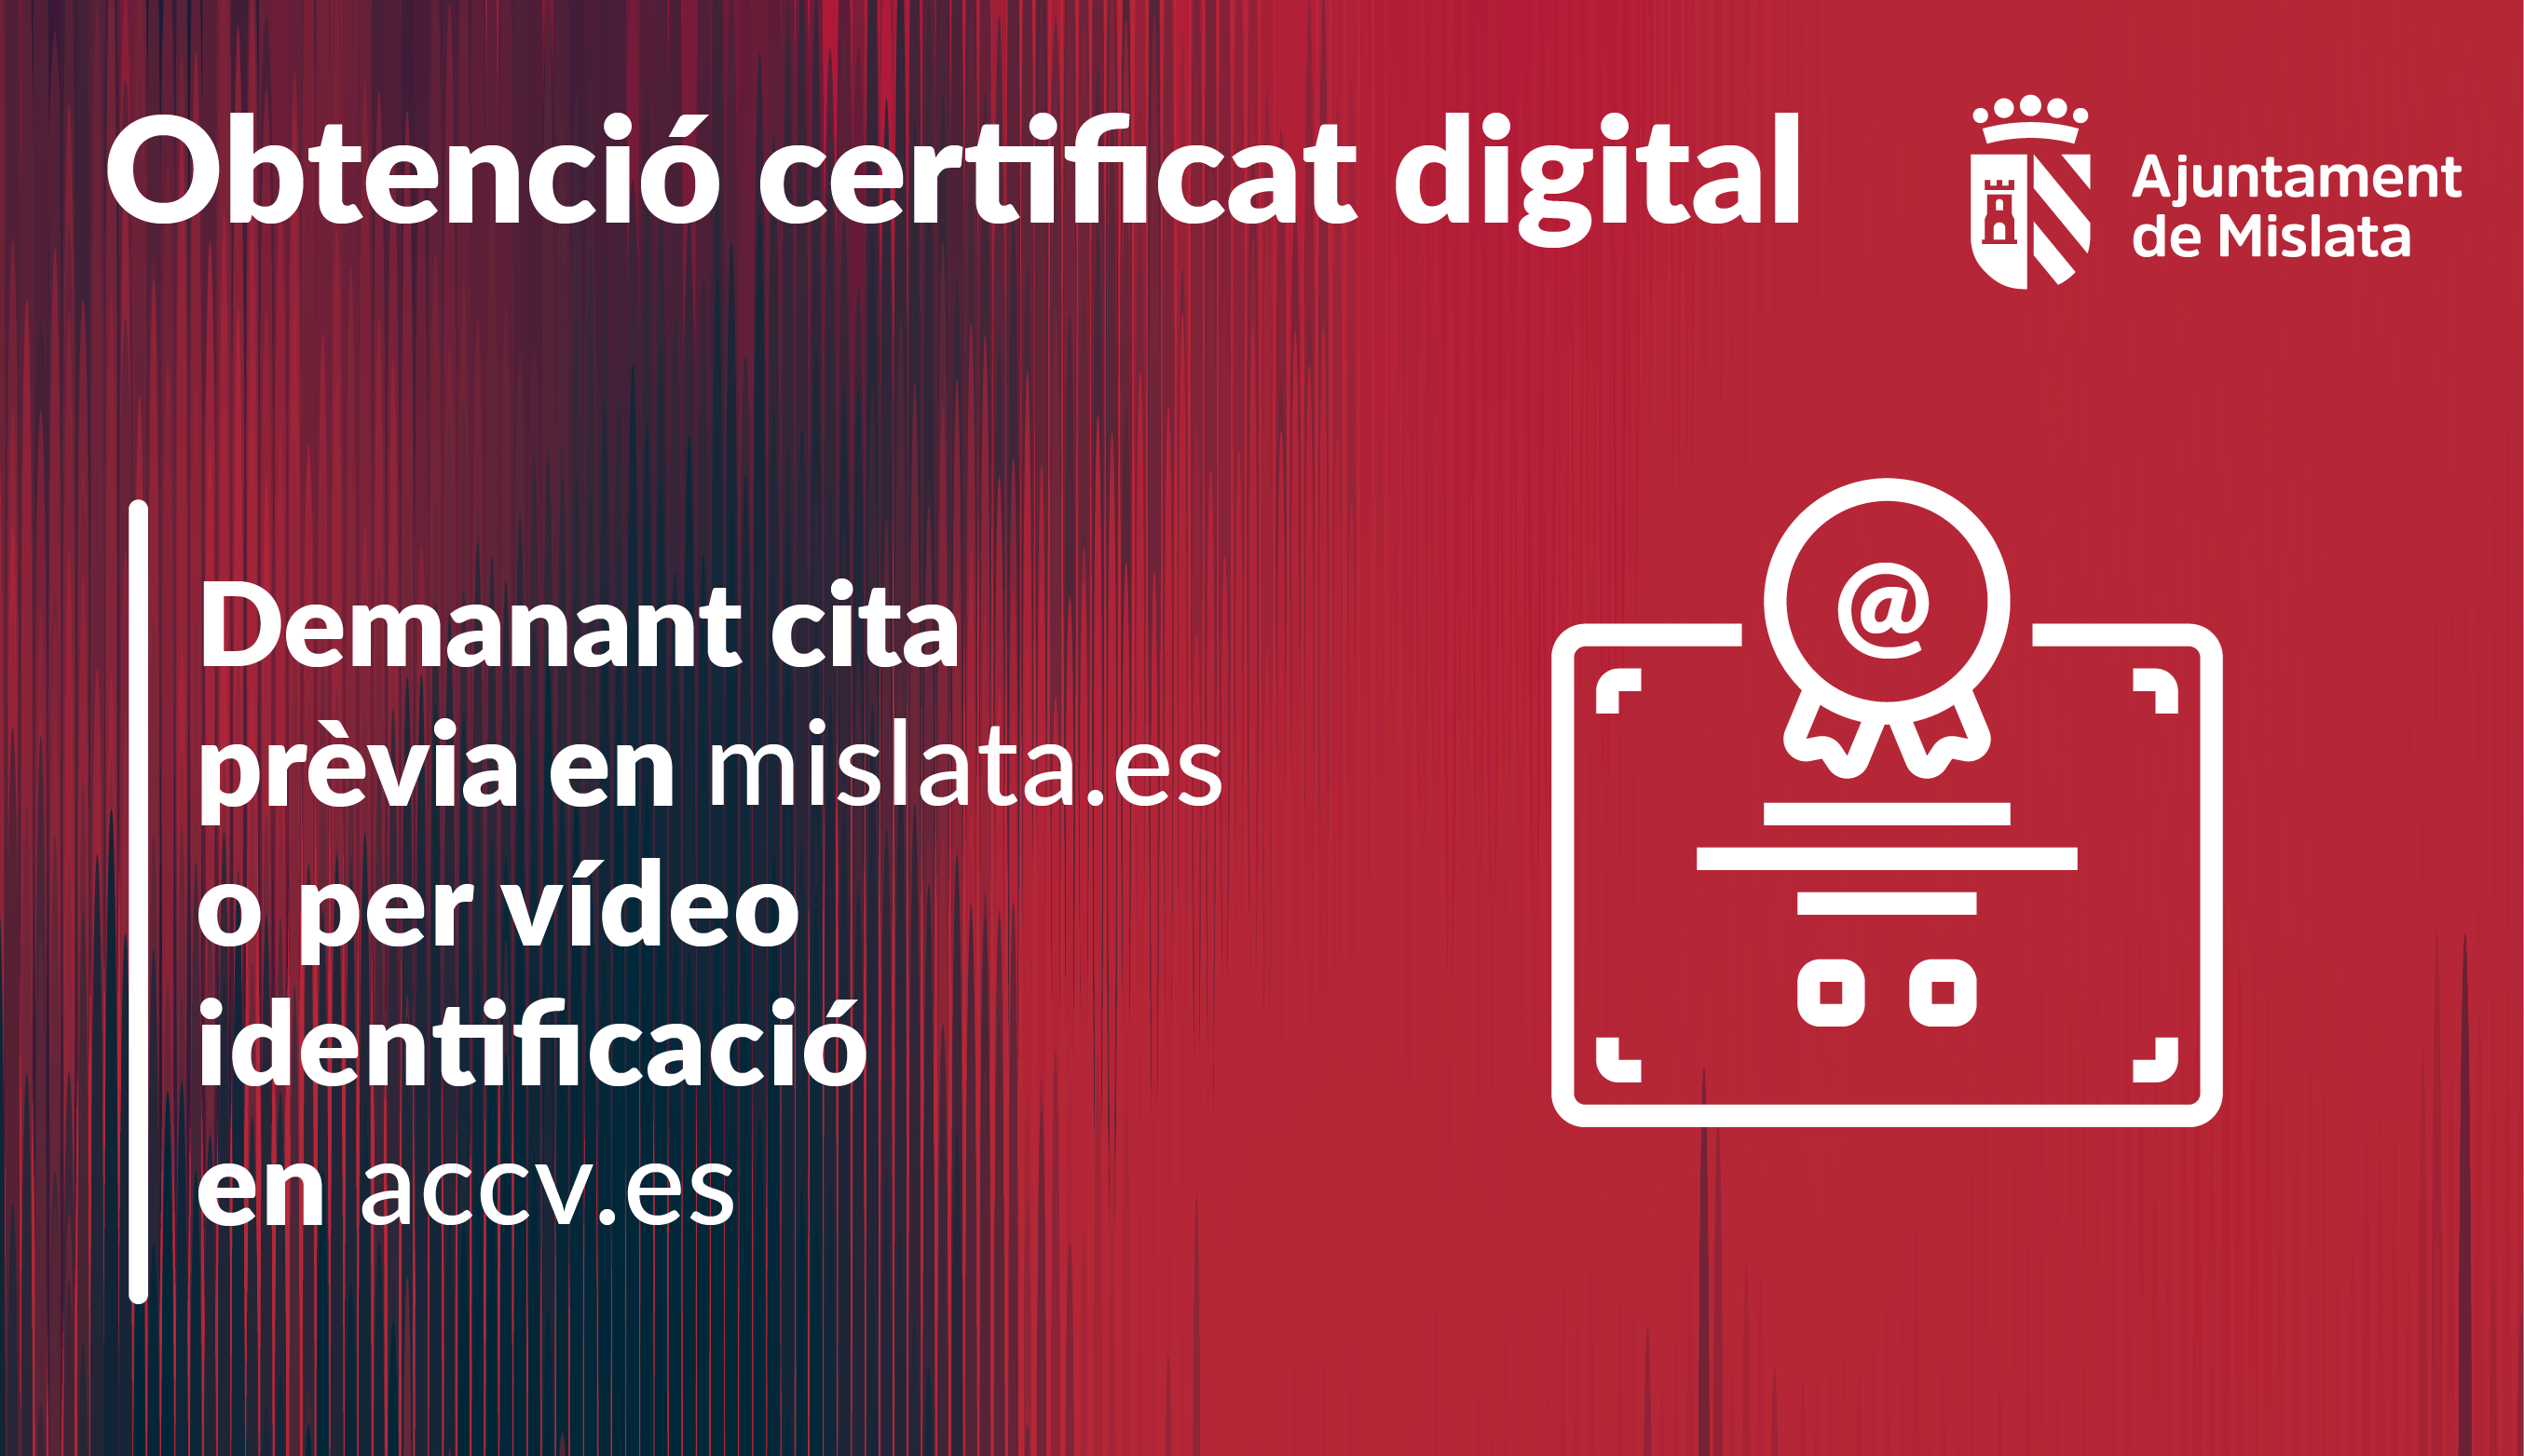 Obtención del Certificado Digital